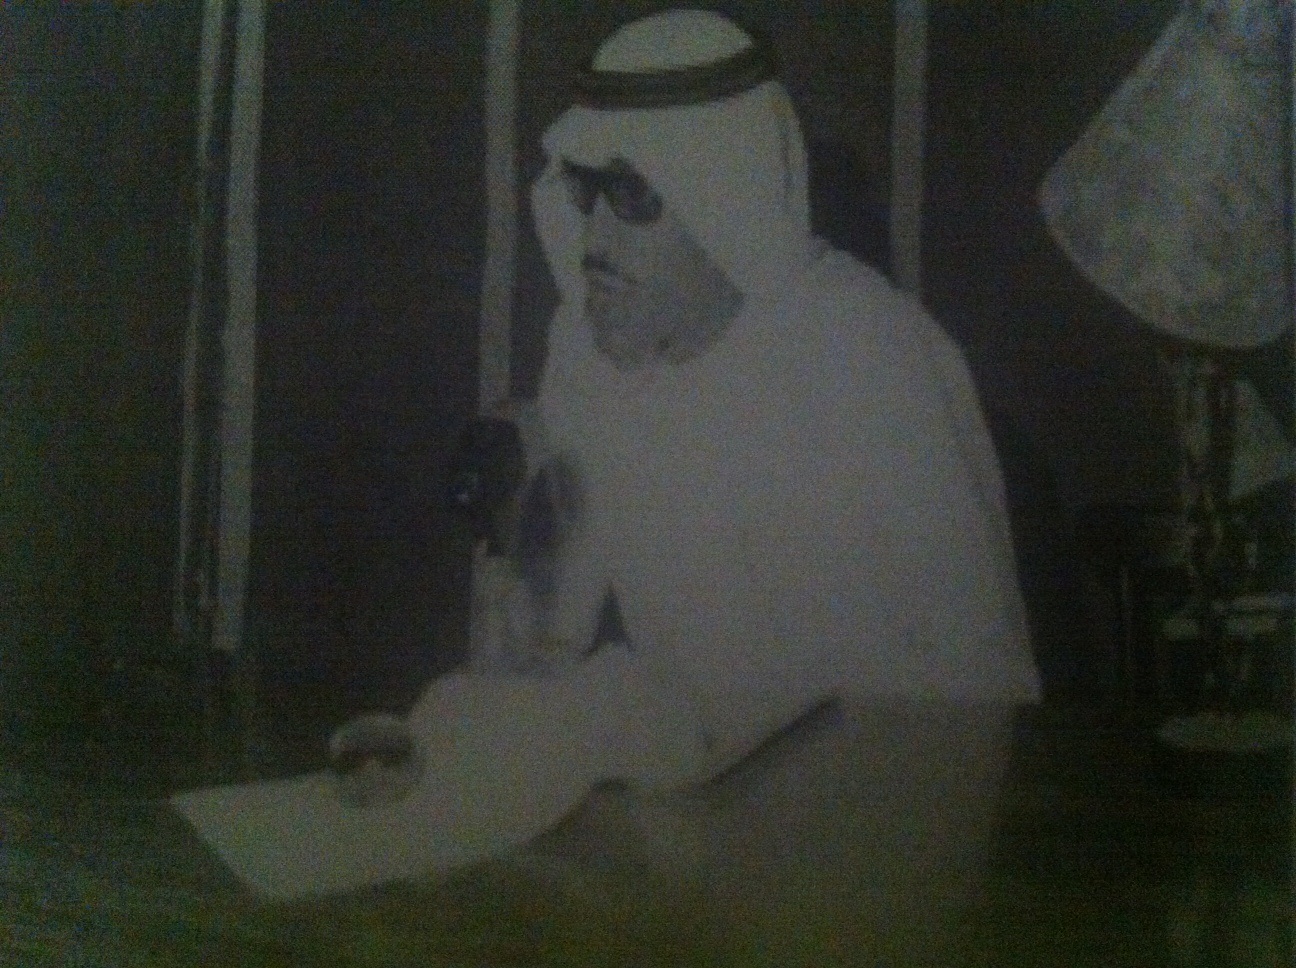 عبدالله منّاع يلقي محاضرته "المستقبل" في نادي الاتحاد عام 1964 (المصدر: أرشيف عبدالله منّاع)